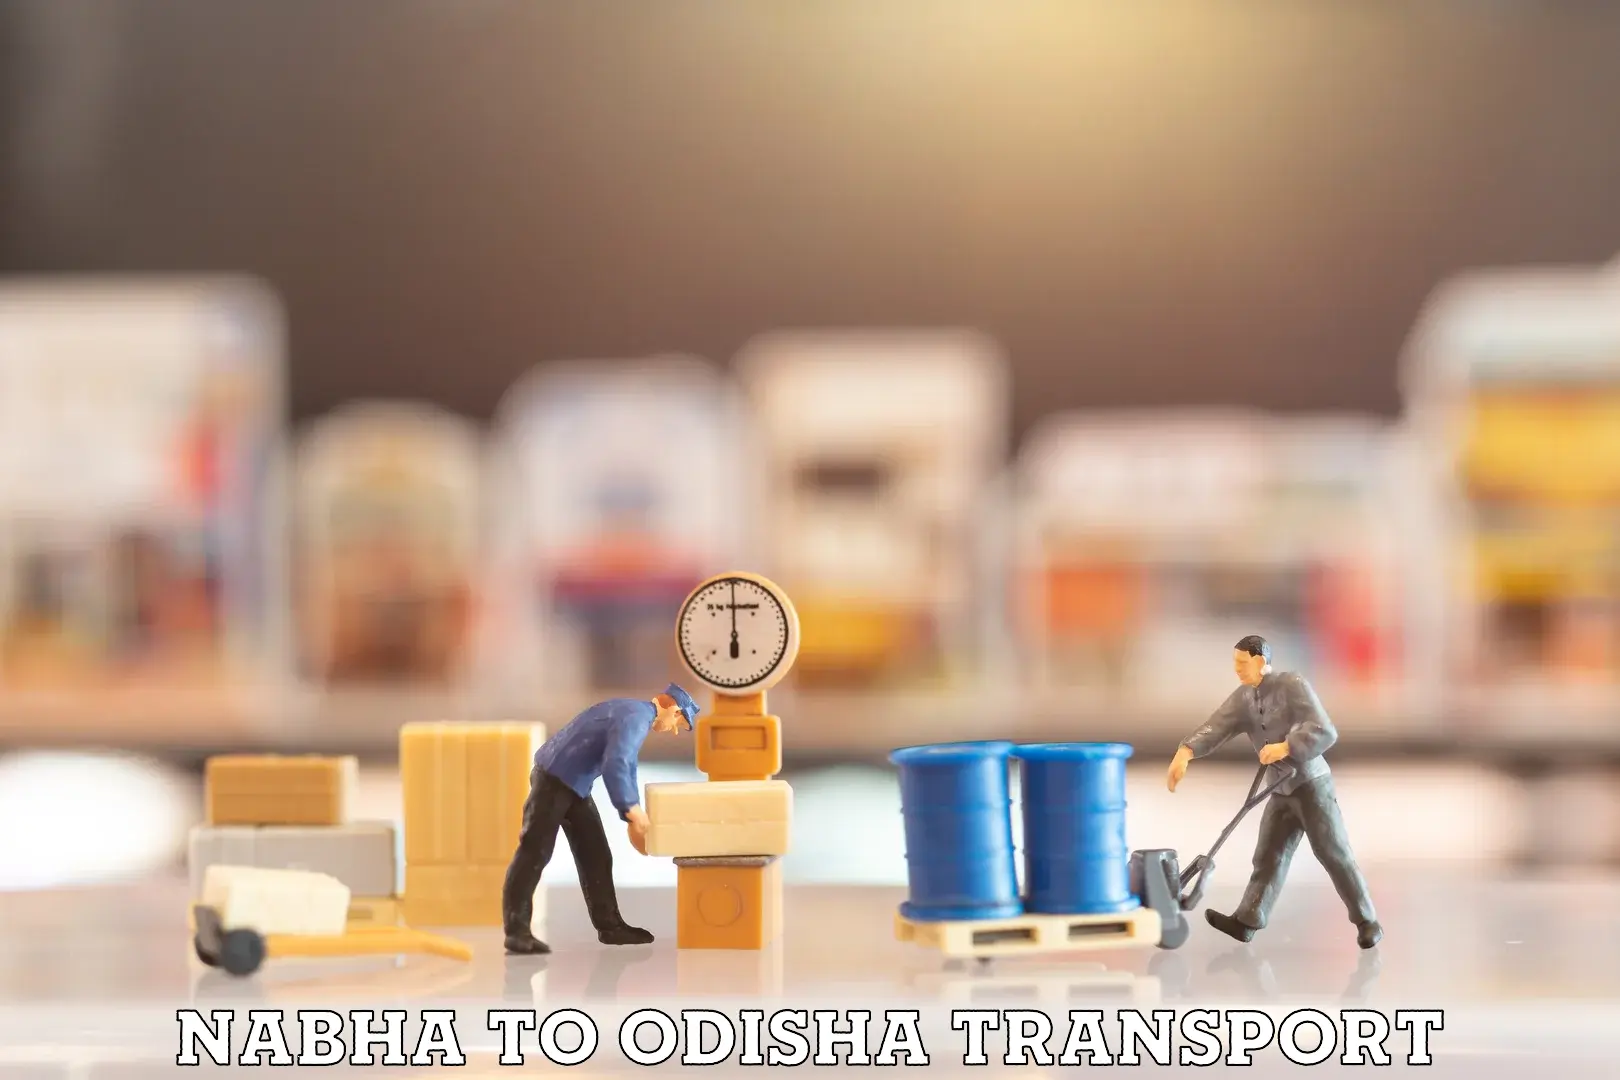 Daily parcel service transport Nabha to Odisha